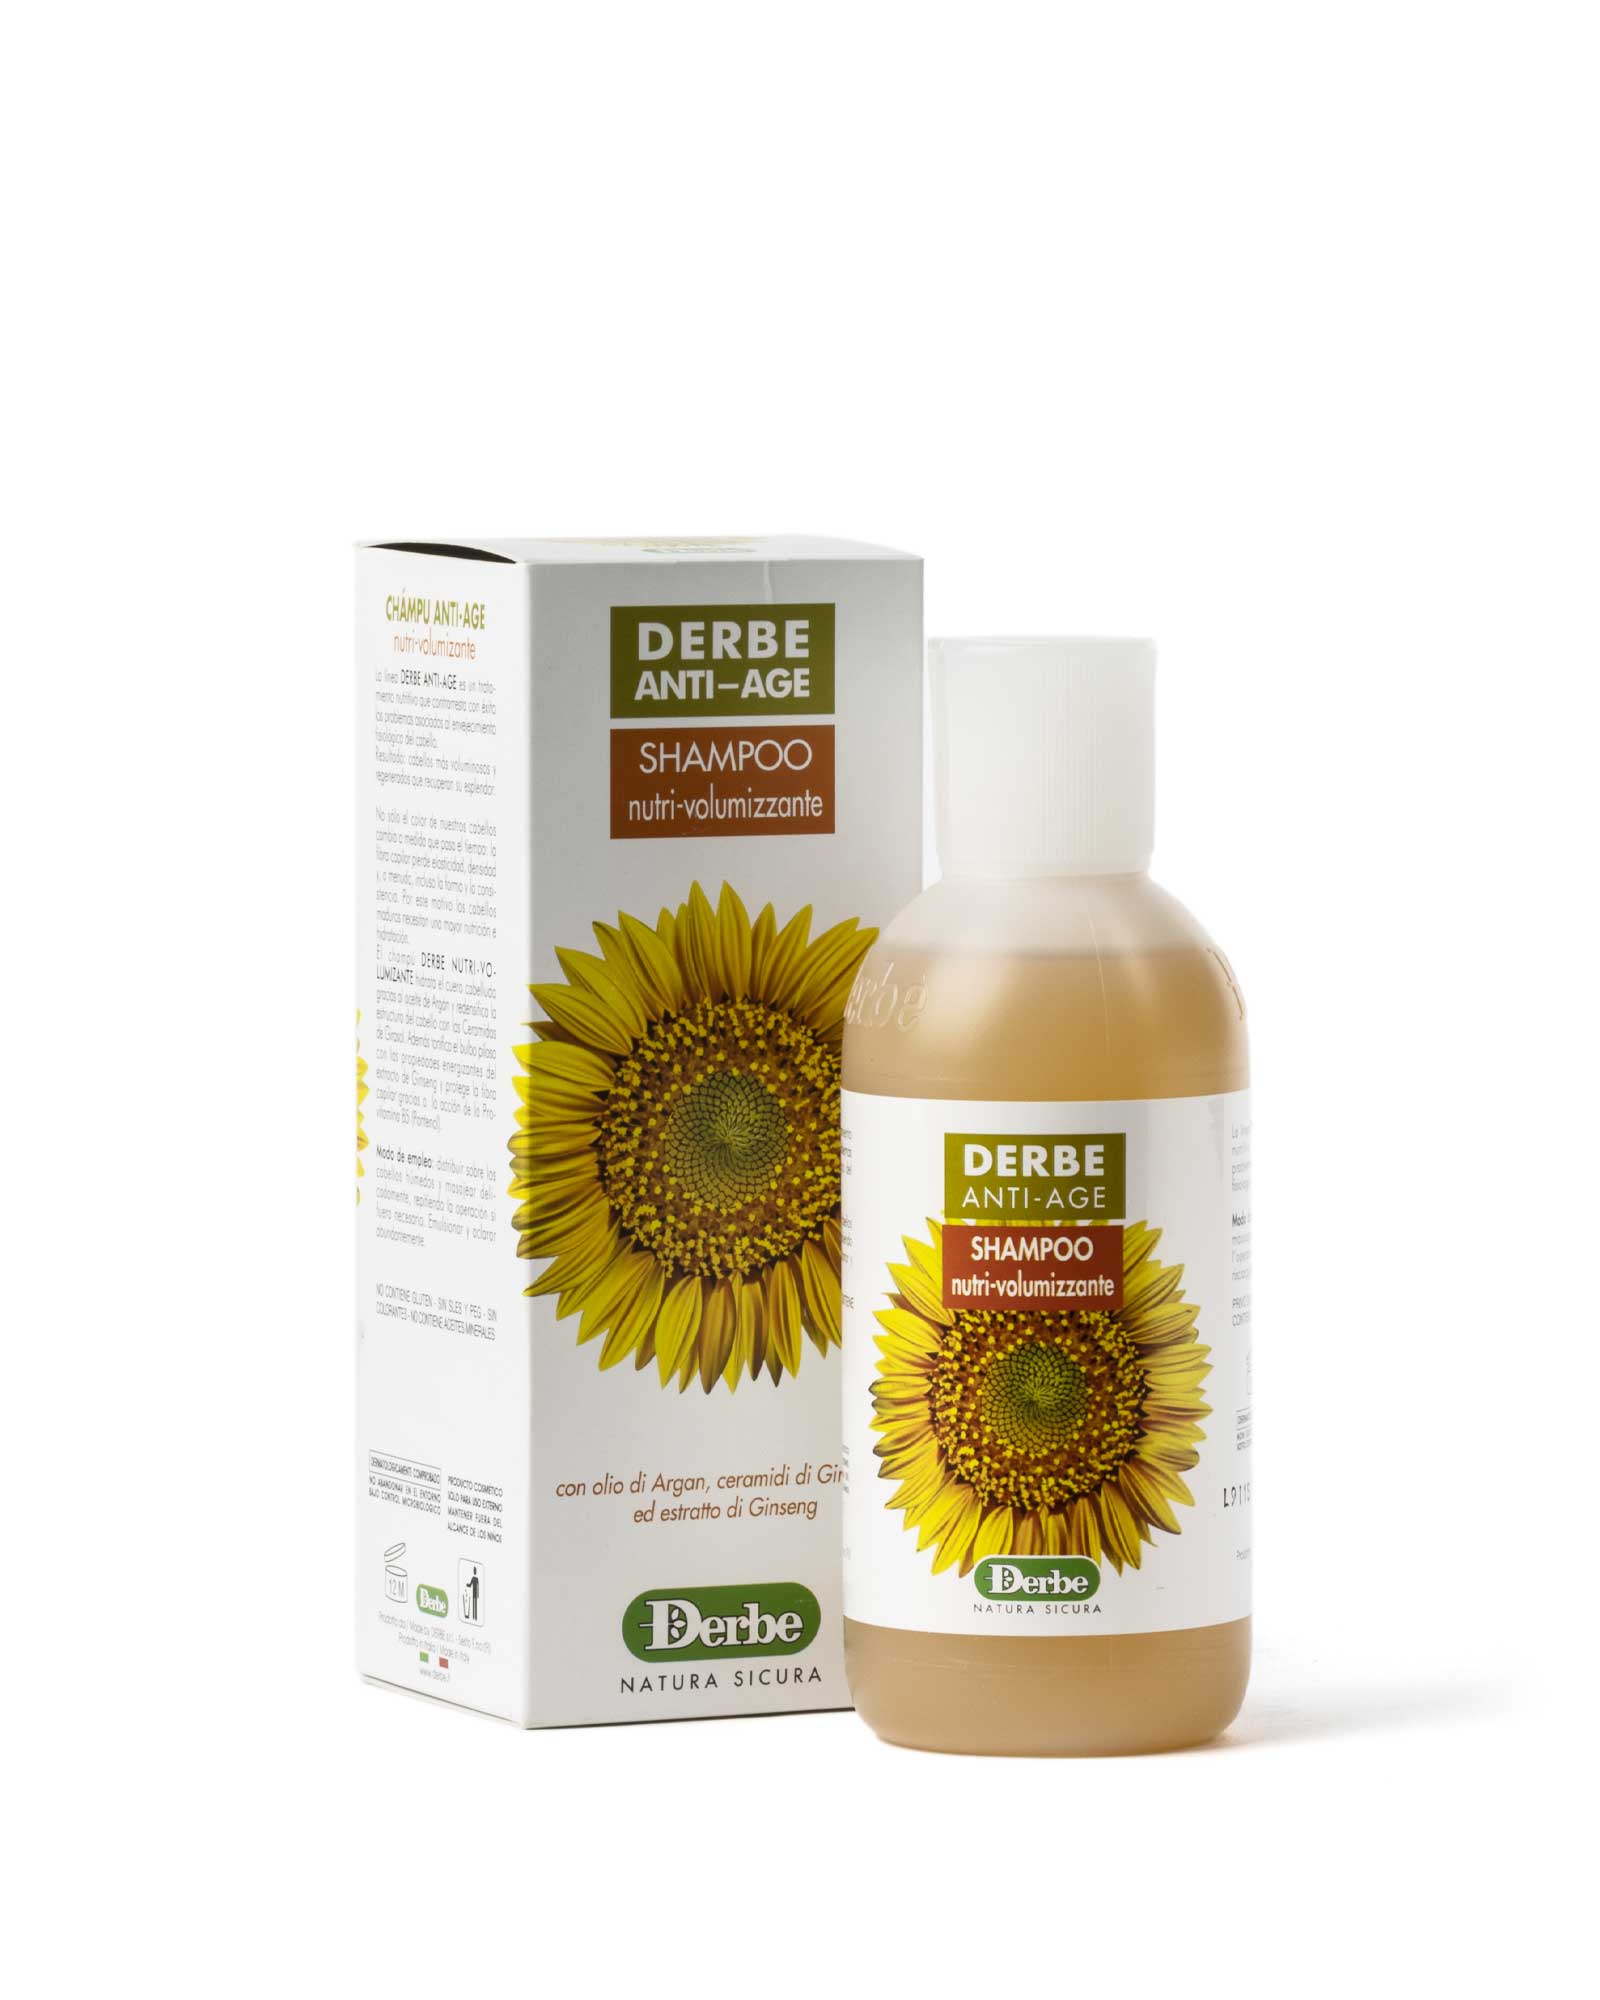 anti-aging-pflegendes-volumengebendes-shampoo-arganöl-ceramide-von-sonnenblumenkräutern